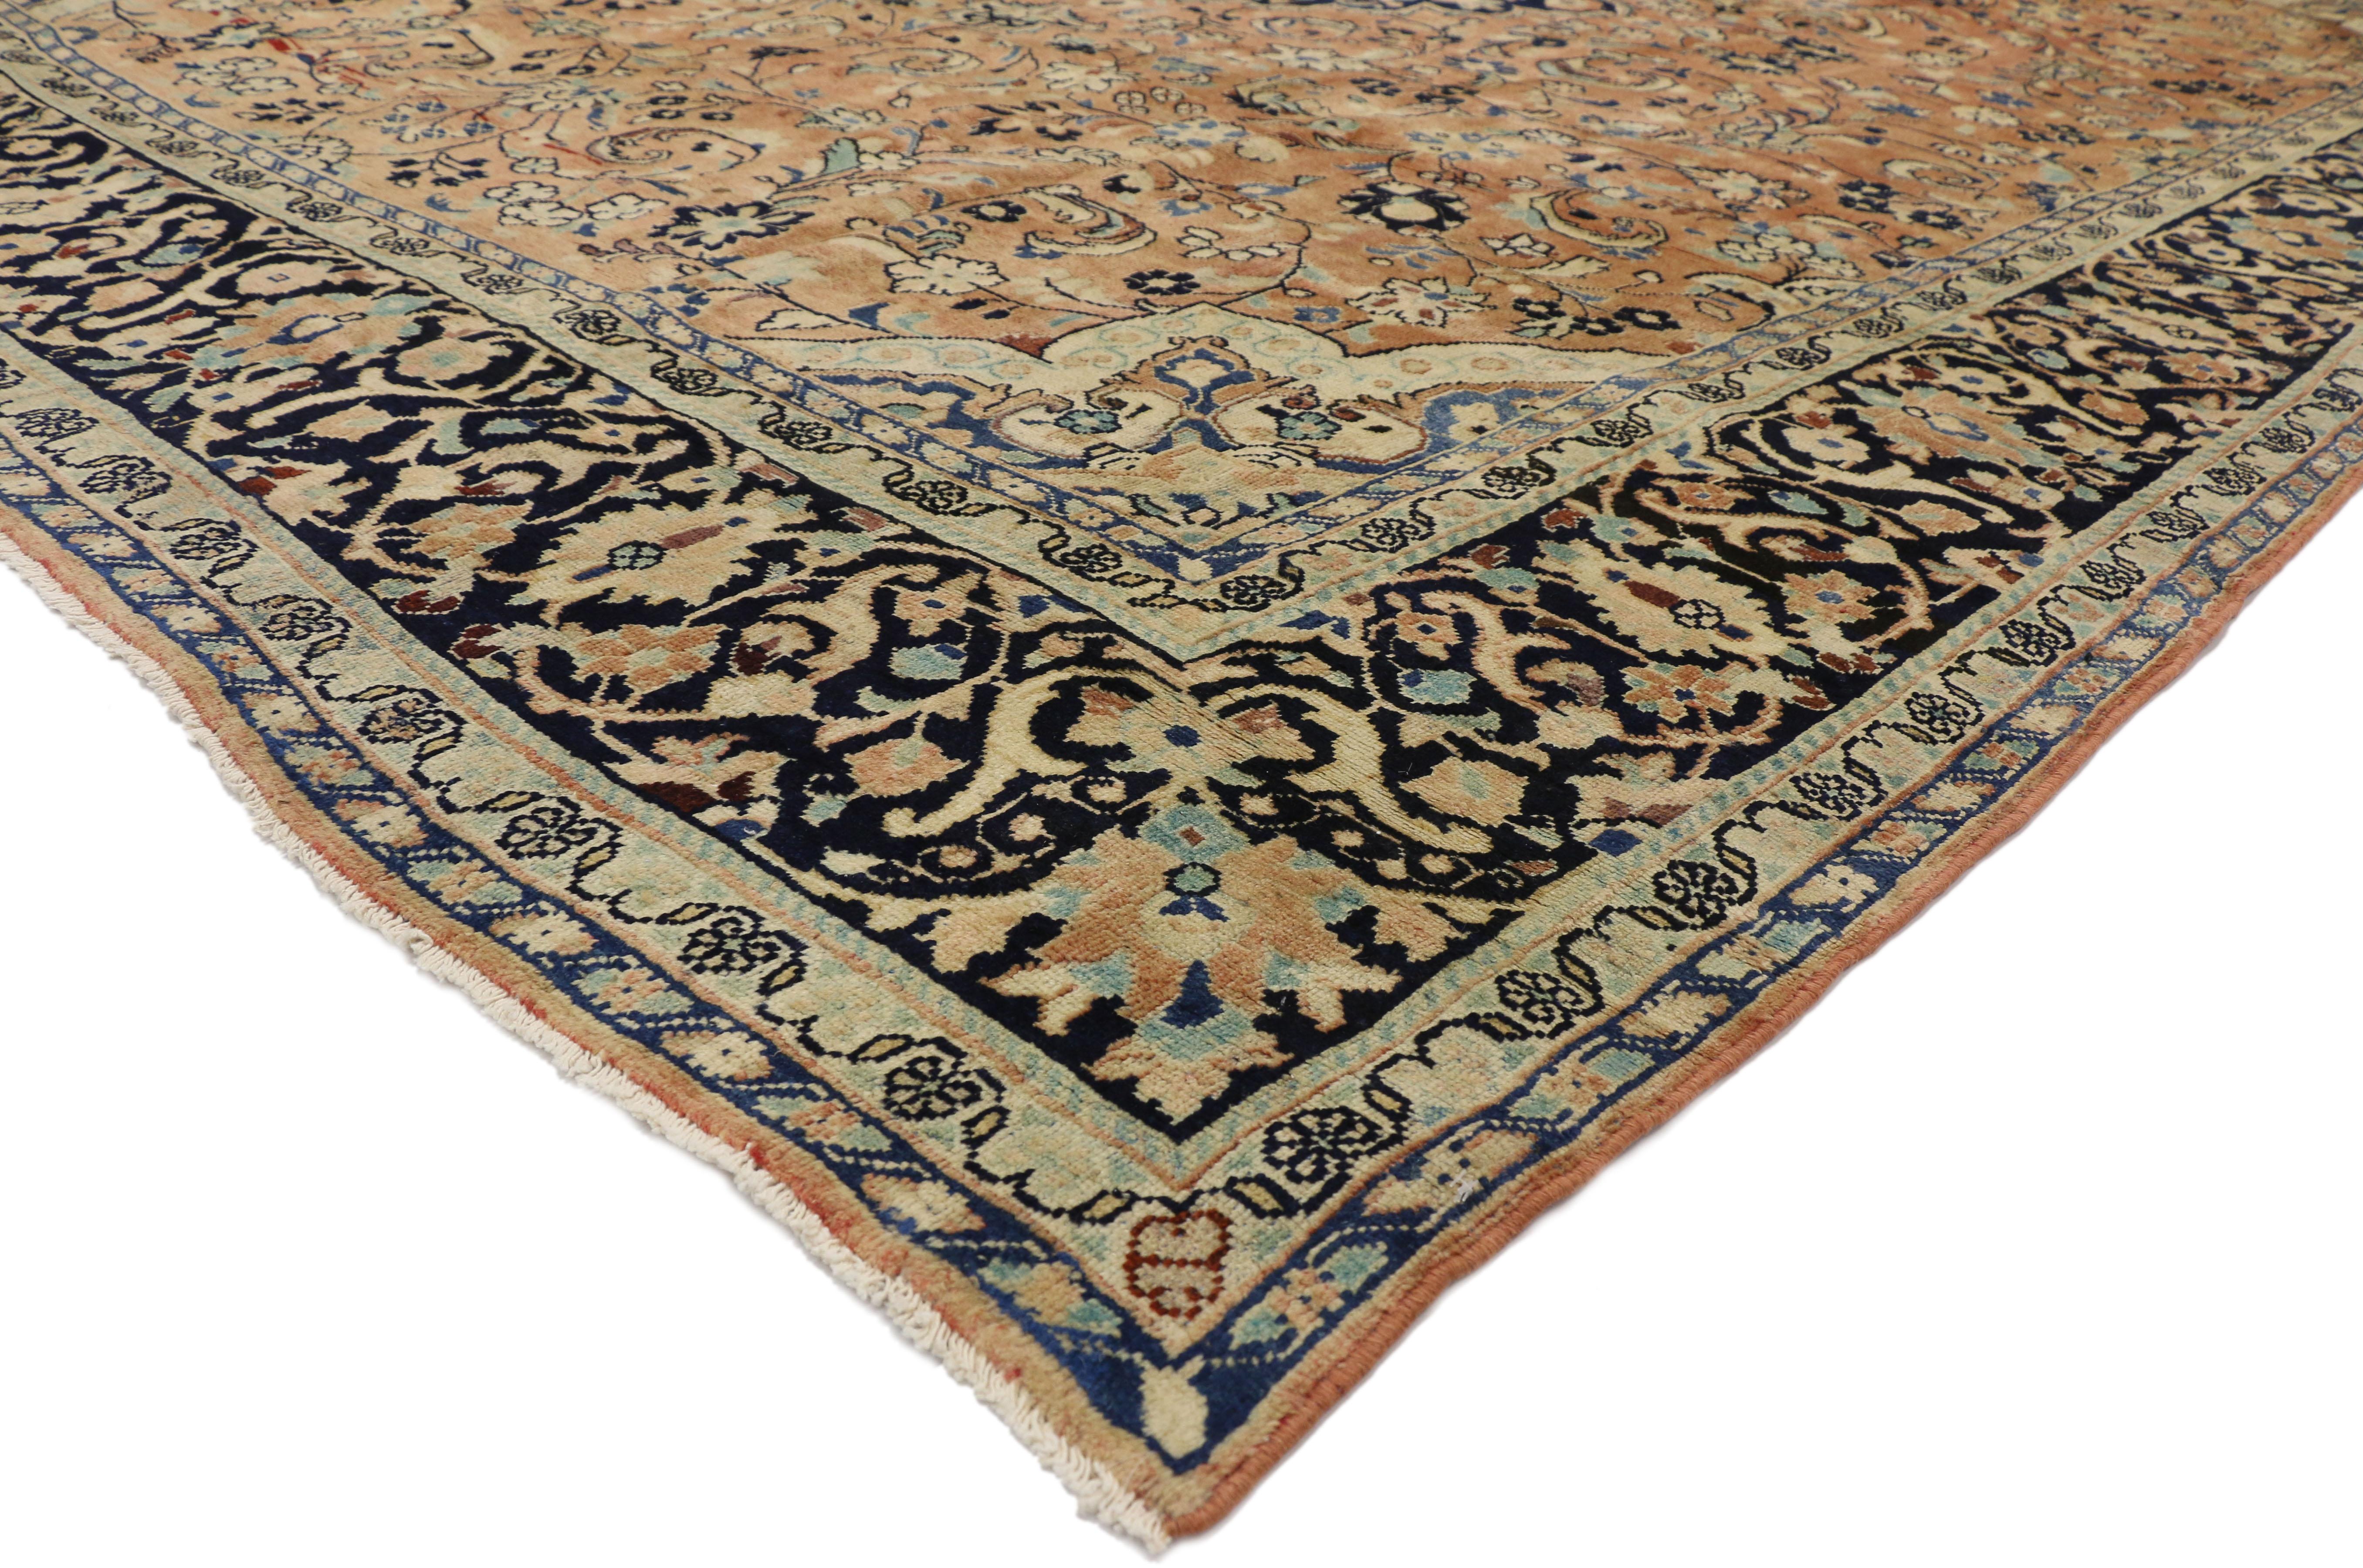 76378 Vintage Persian Mahal Teppich mit Arabeske Jugendstil und Russisch Home Style 10'08 X 14'00. Dieser handgeknüpfte persische Mahal-Teppich aus Wolle zeigt ein Medaillon in der Mitte, das von einem floralen Muster umgeben ist, das aus blühenden